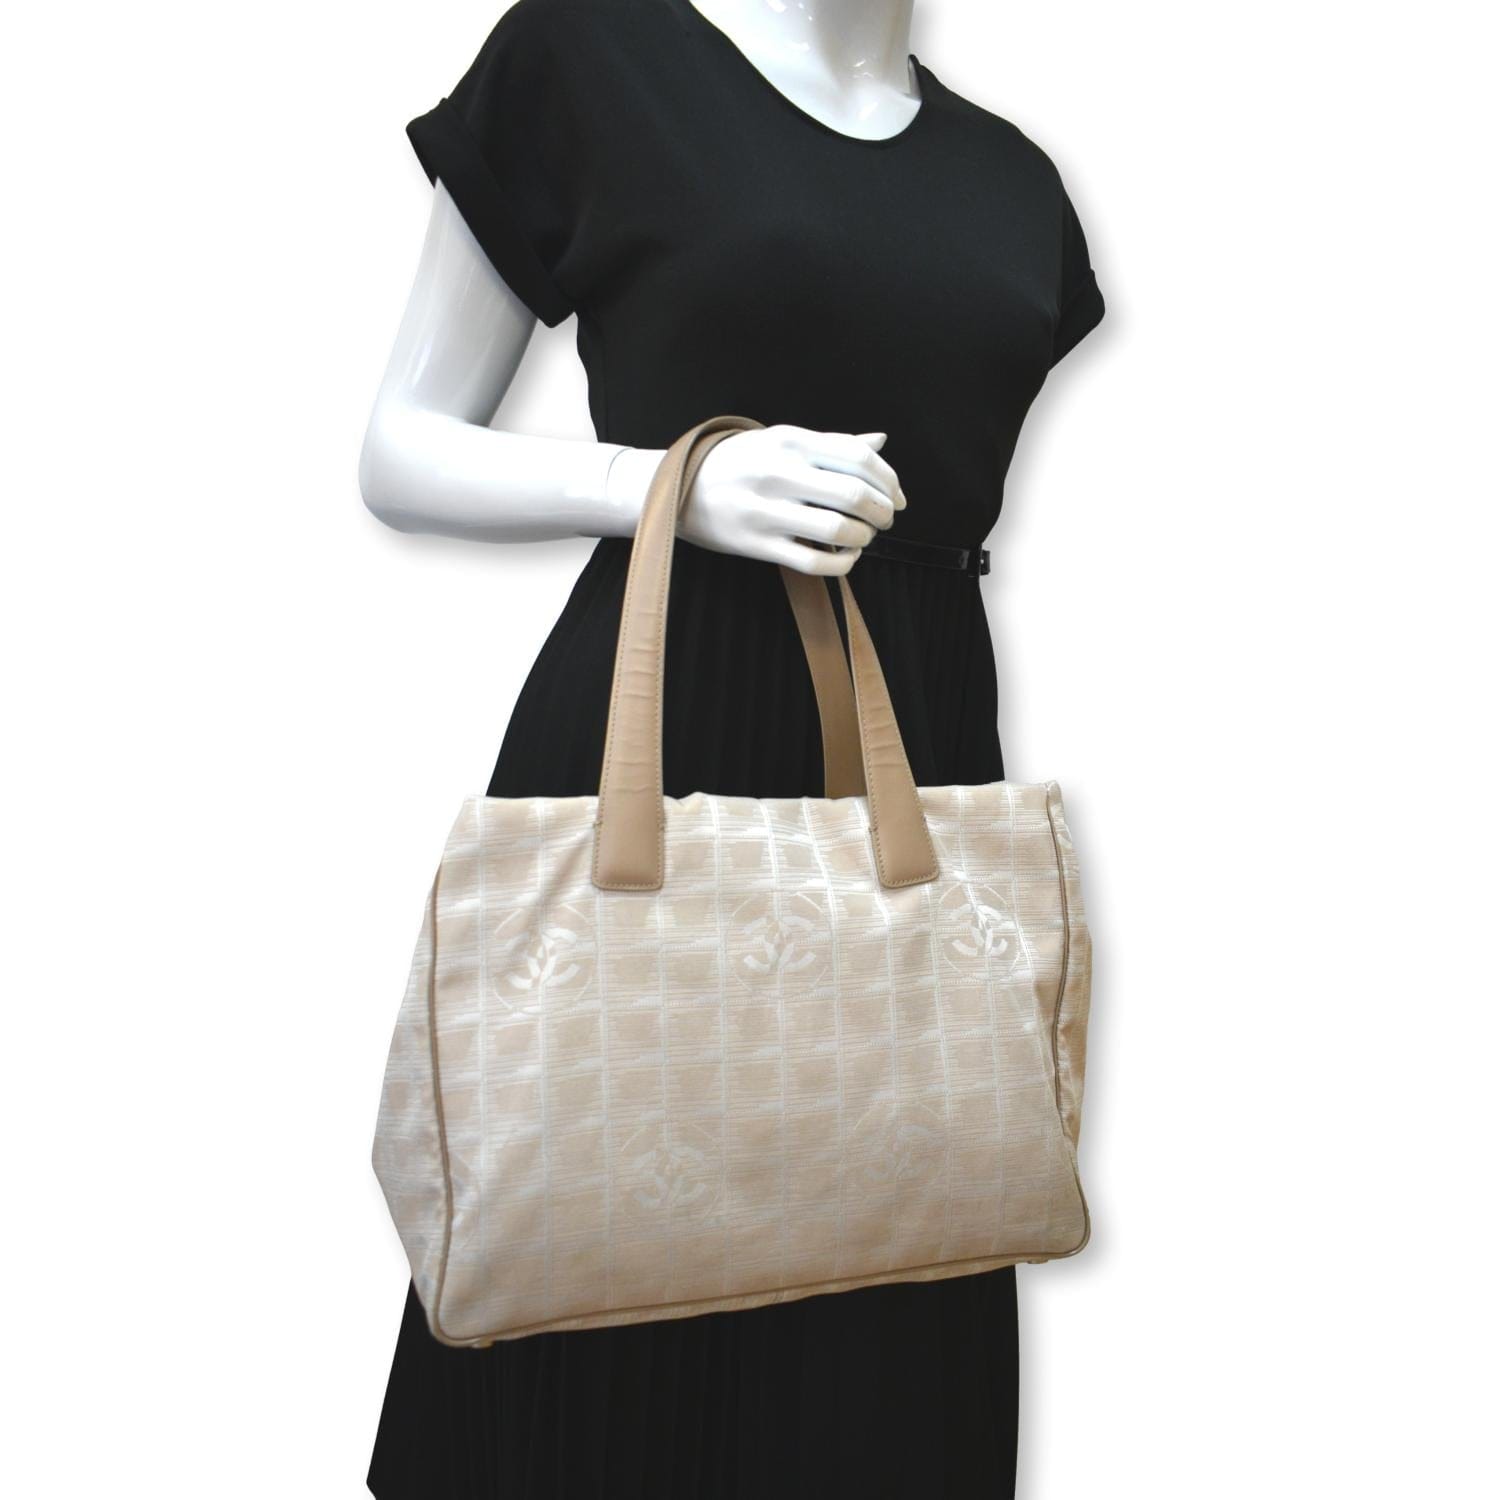 Timeless/classique tweed crossbody bag Chanel Beige in Tweed